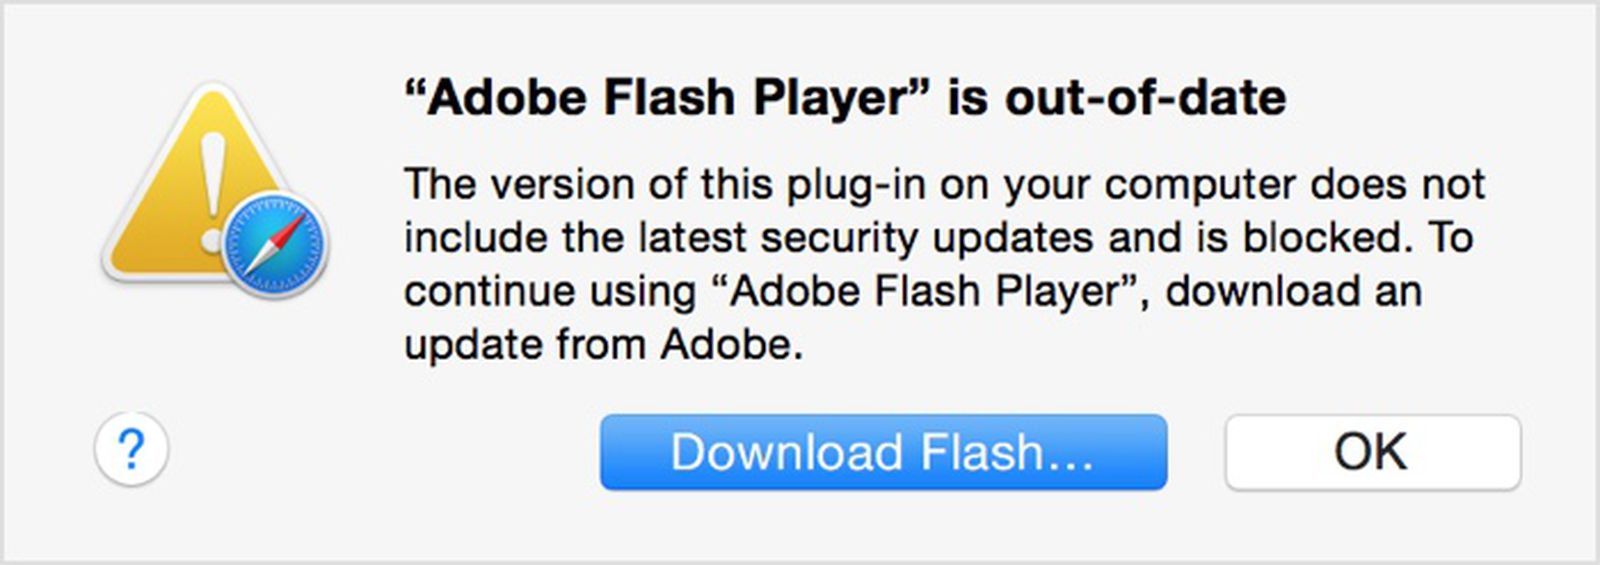 chrome plugins adobe flash player in mac